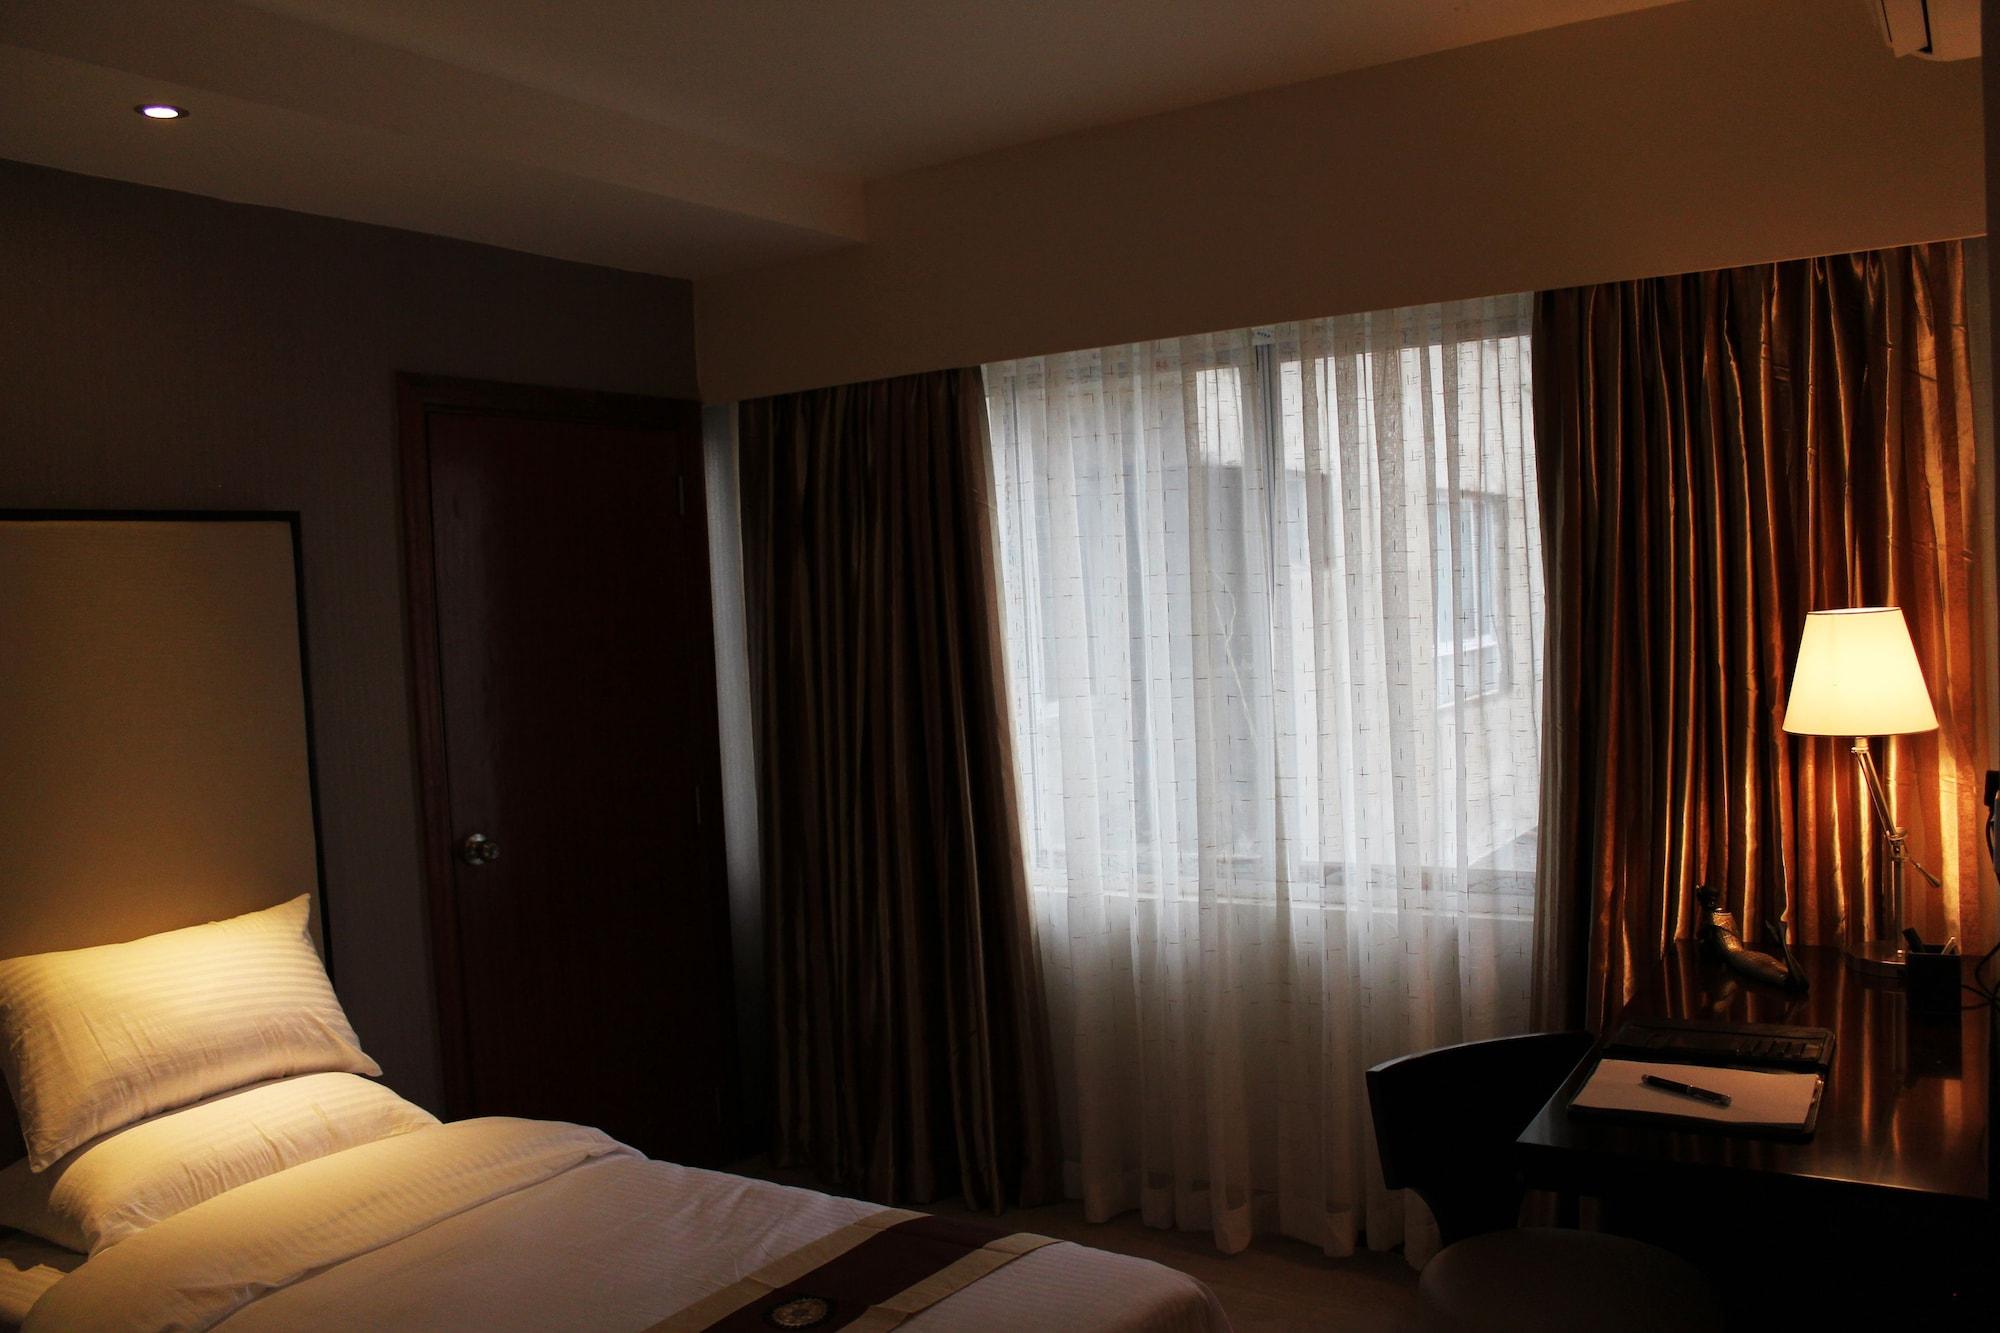 Zehneria Suites Hotel Nairobi Exterior foto